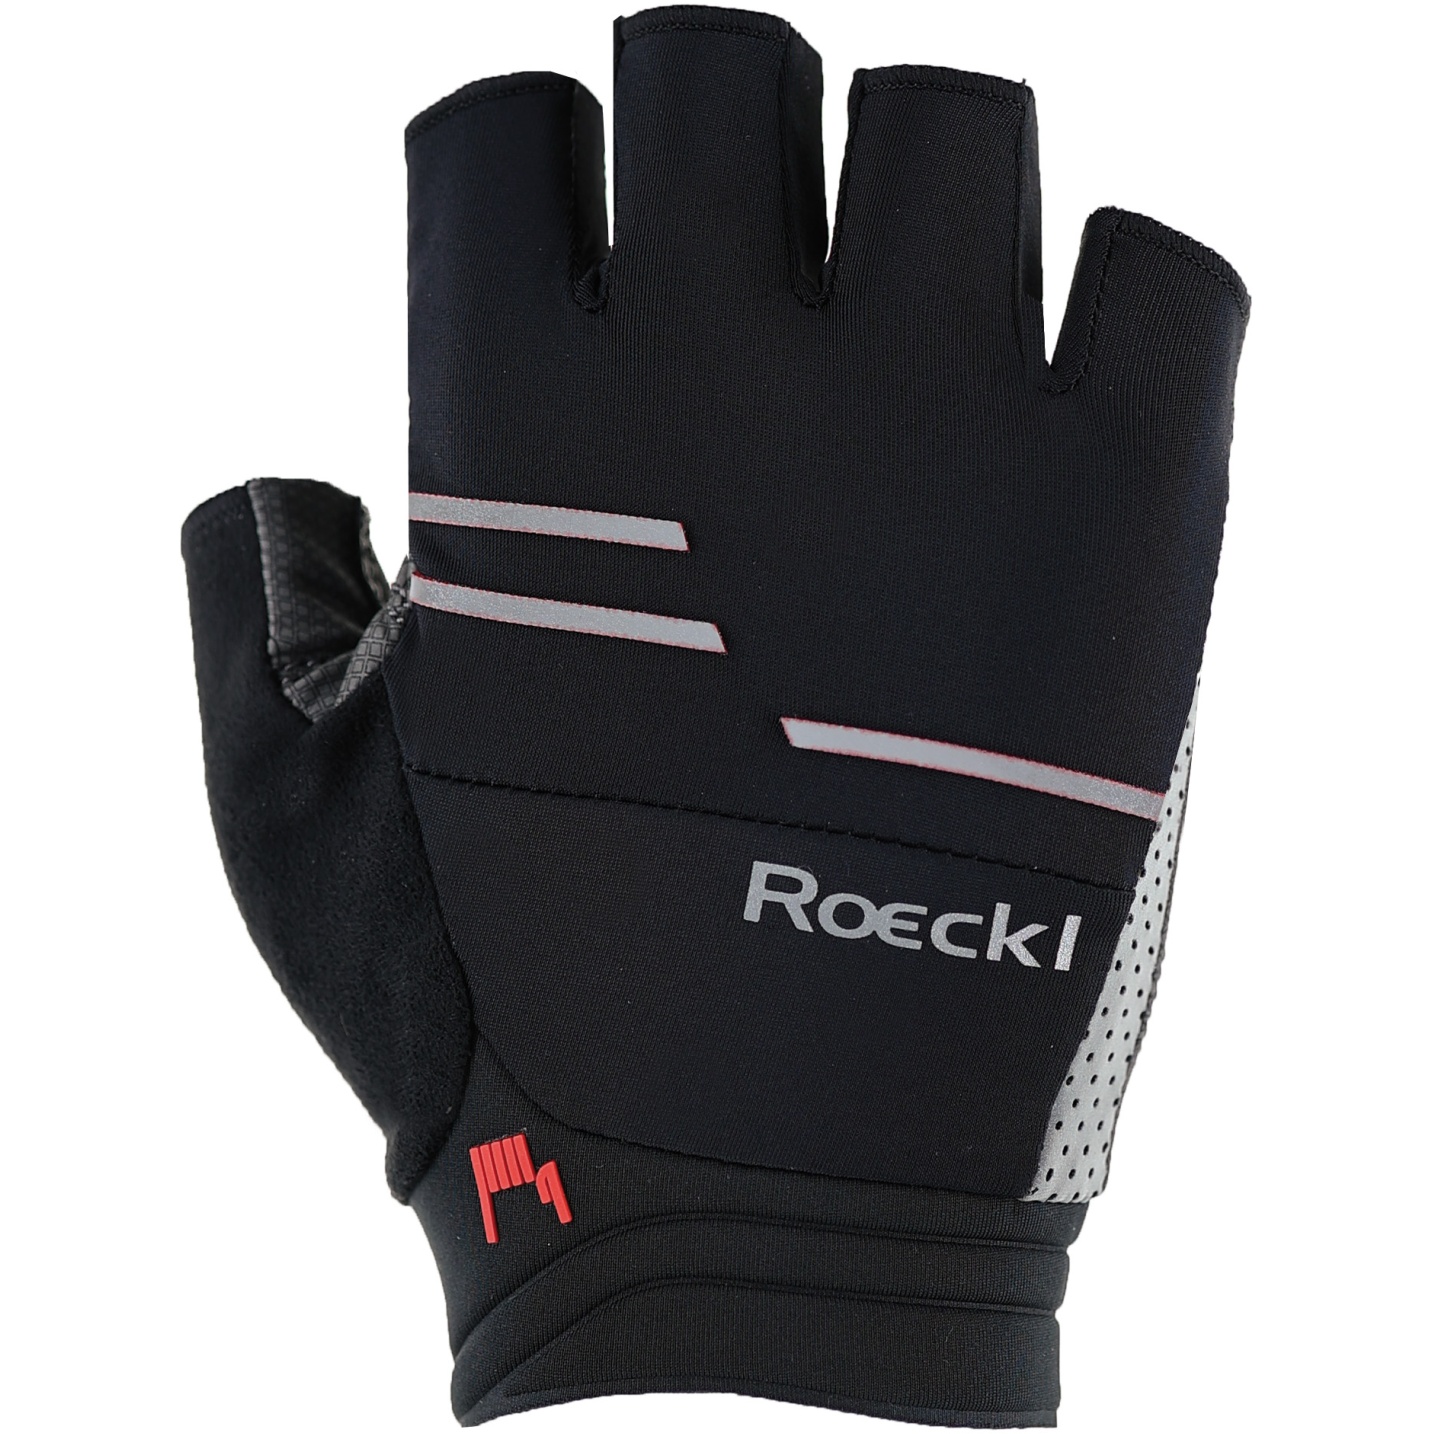 Productfoto van Roeckl Sports Iguna Fietshandschoenen - zwart 9000